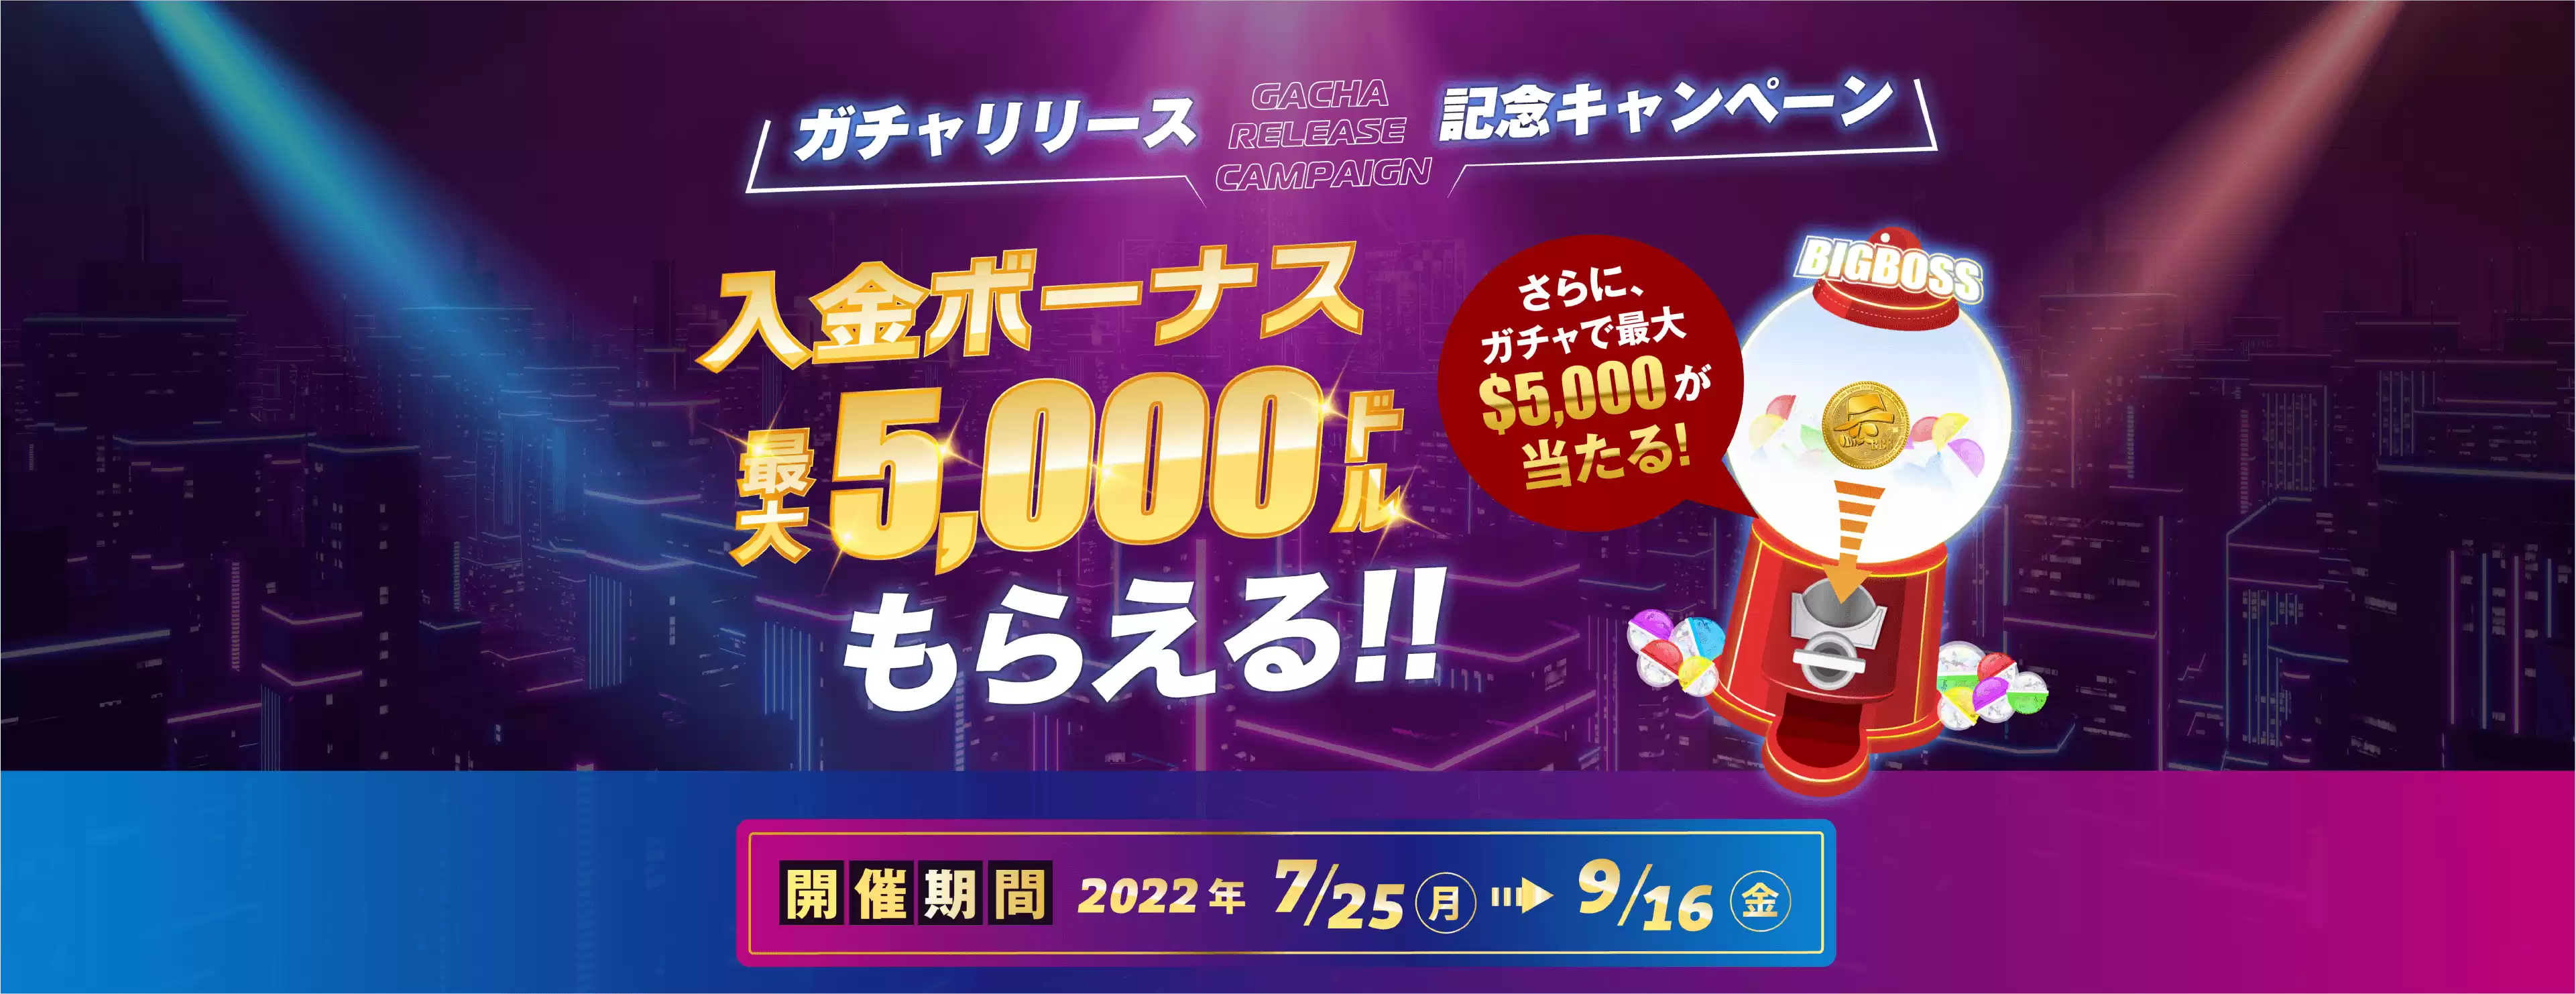 【BigBoss】最大5,000ドル分ボーナスがもらえる!!入金ボーナスキャンペーン